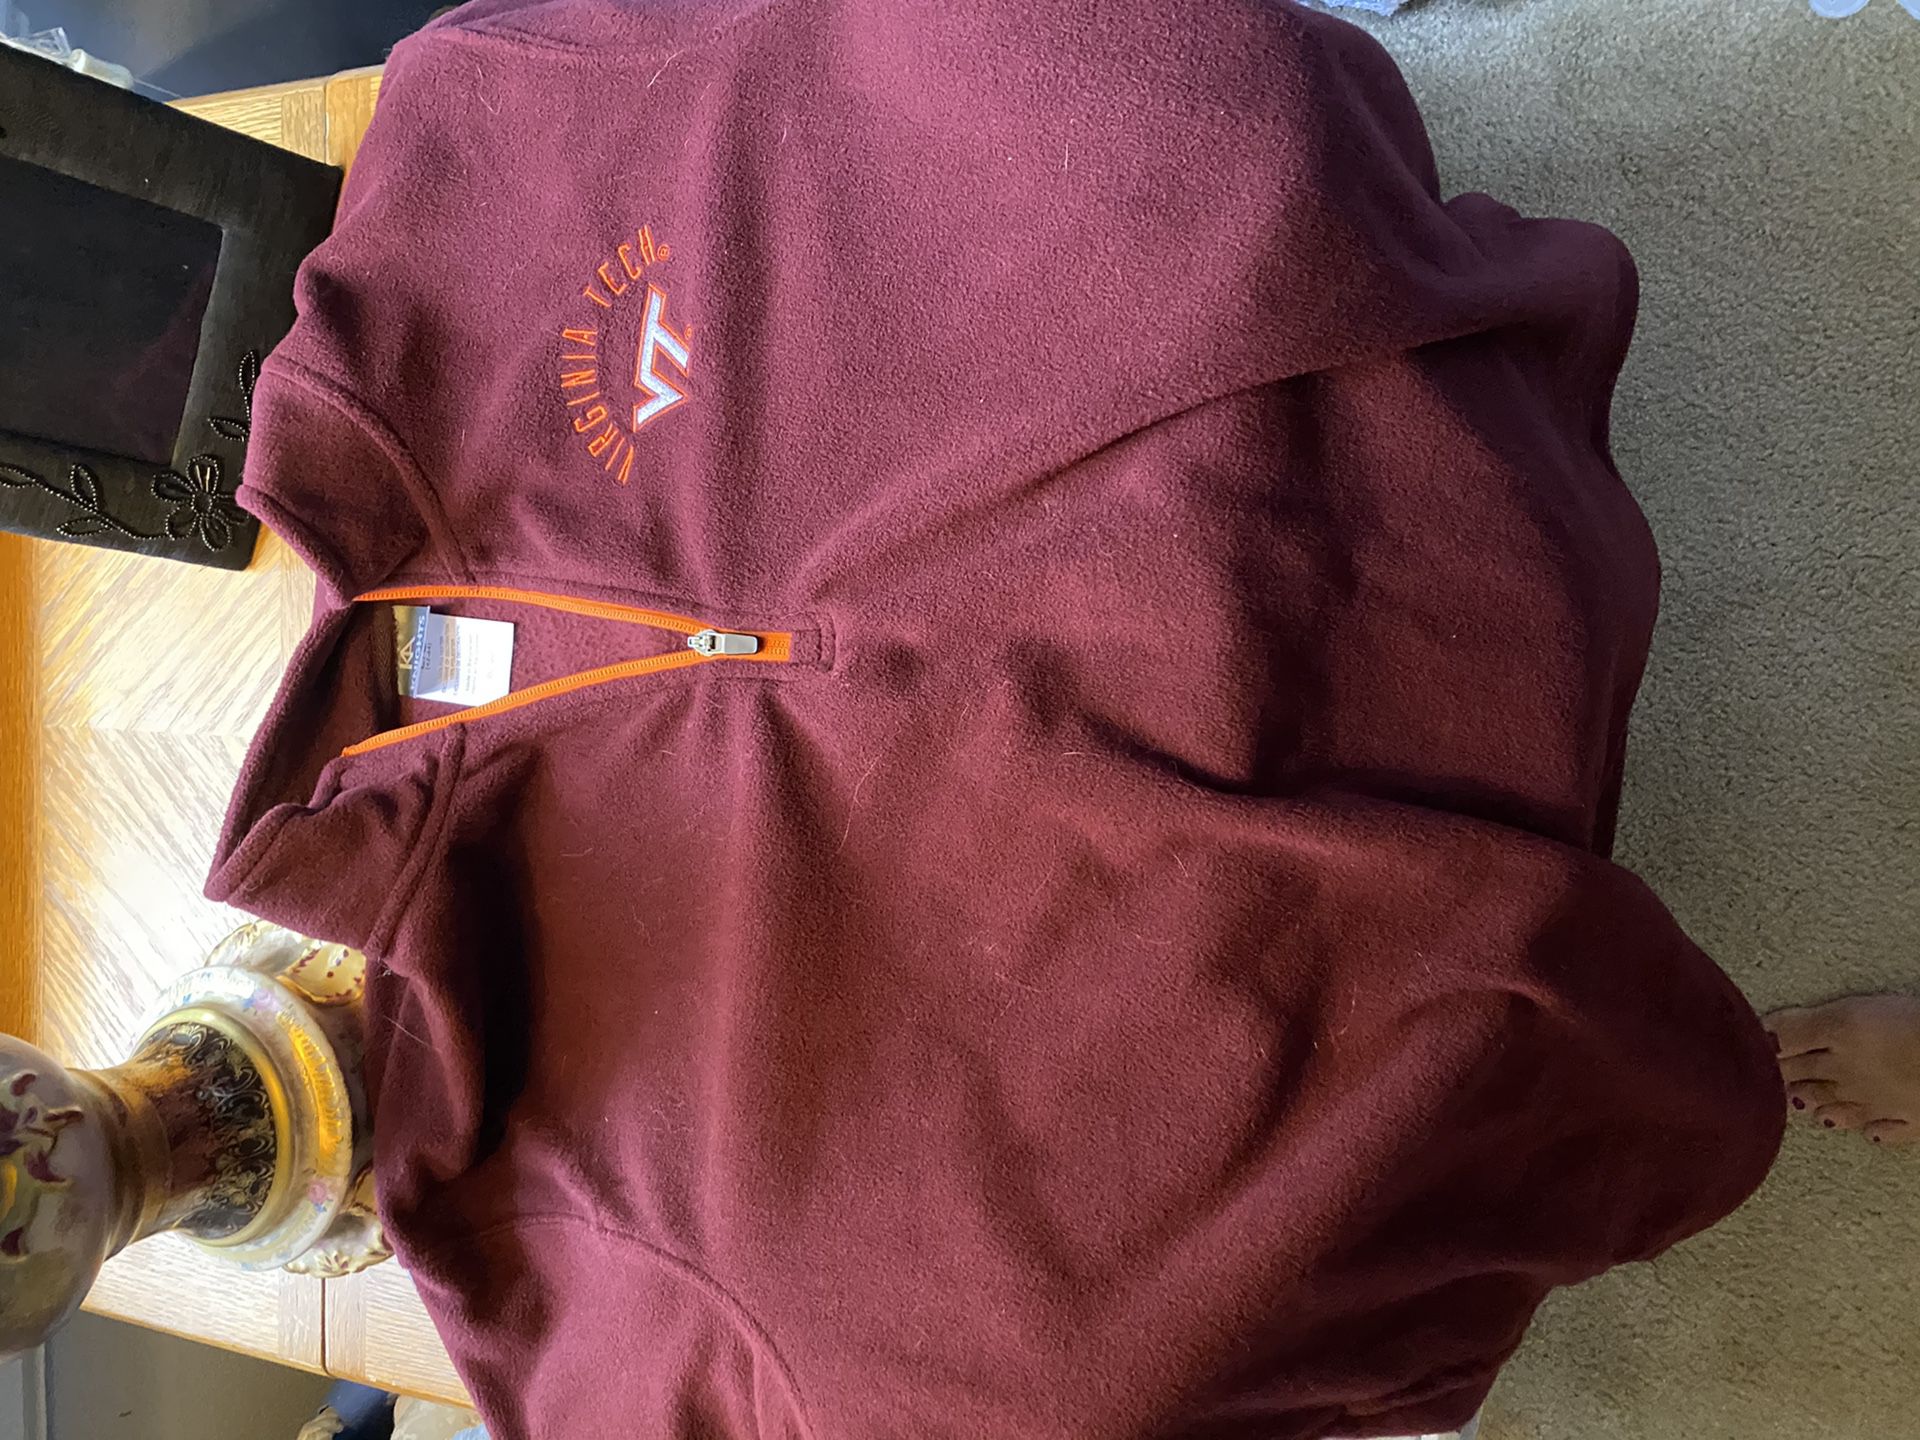 Virginia Tech Fleece Sweatshirt size Large